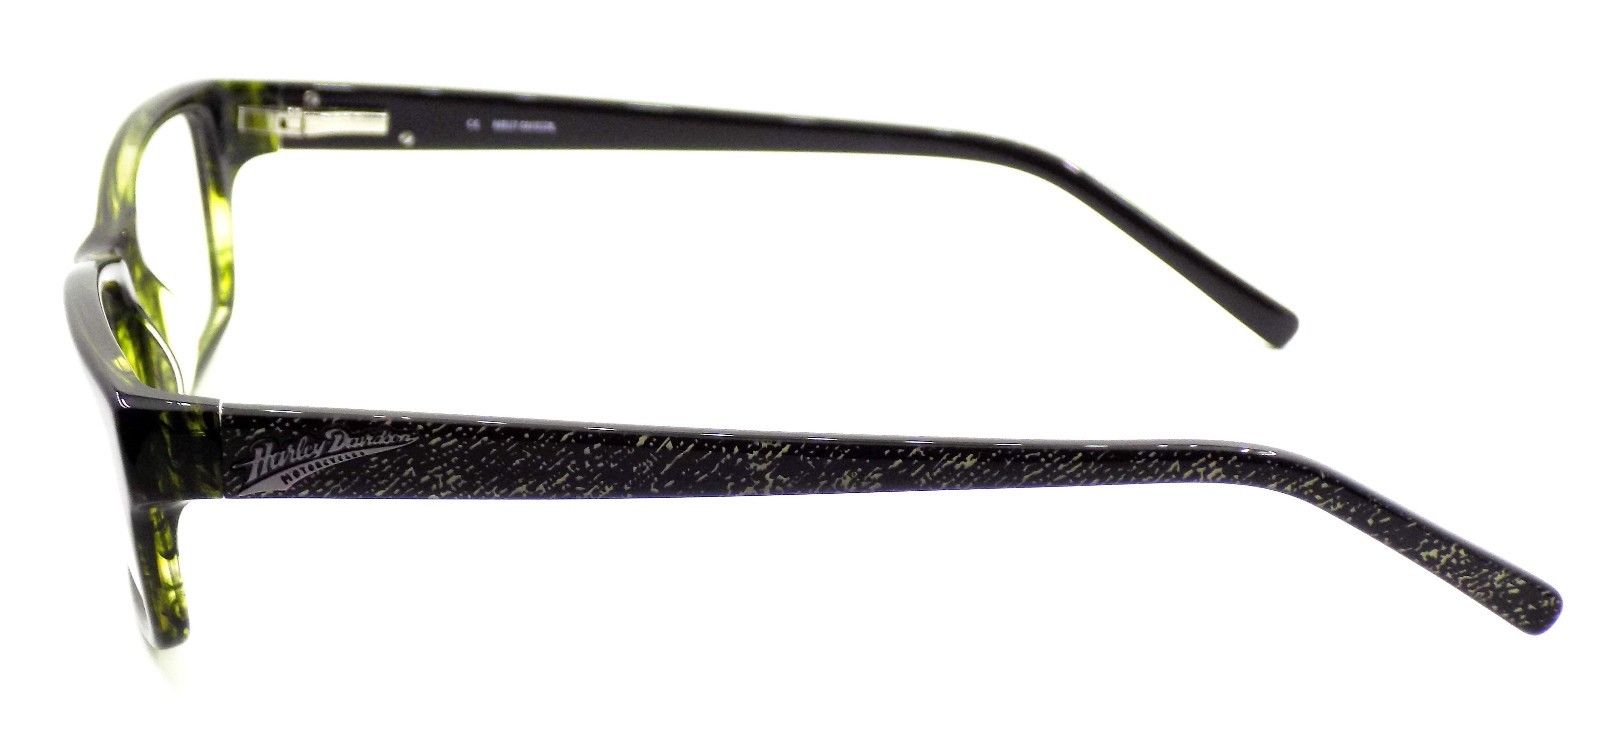 3-Harley Davidson HDT103 OL Women's Eyeglasses Frames 51-16-135 Olive + Case-715583731622-IKSpecs